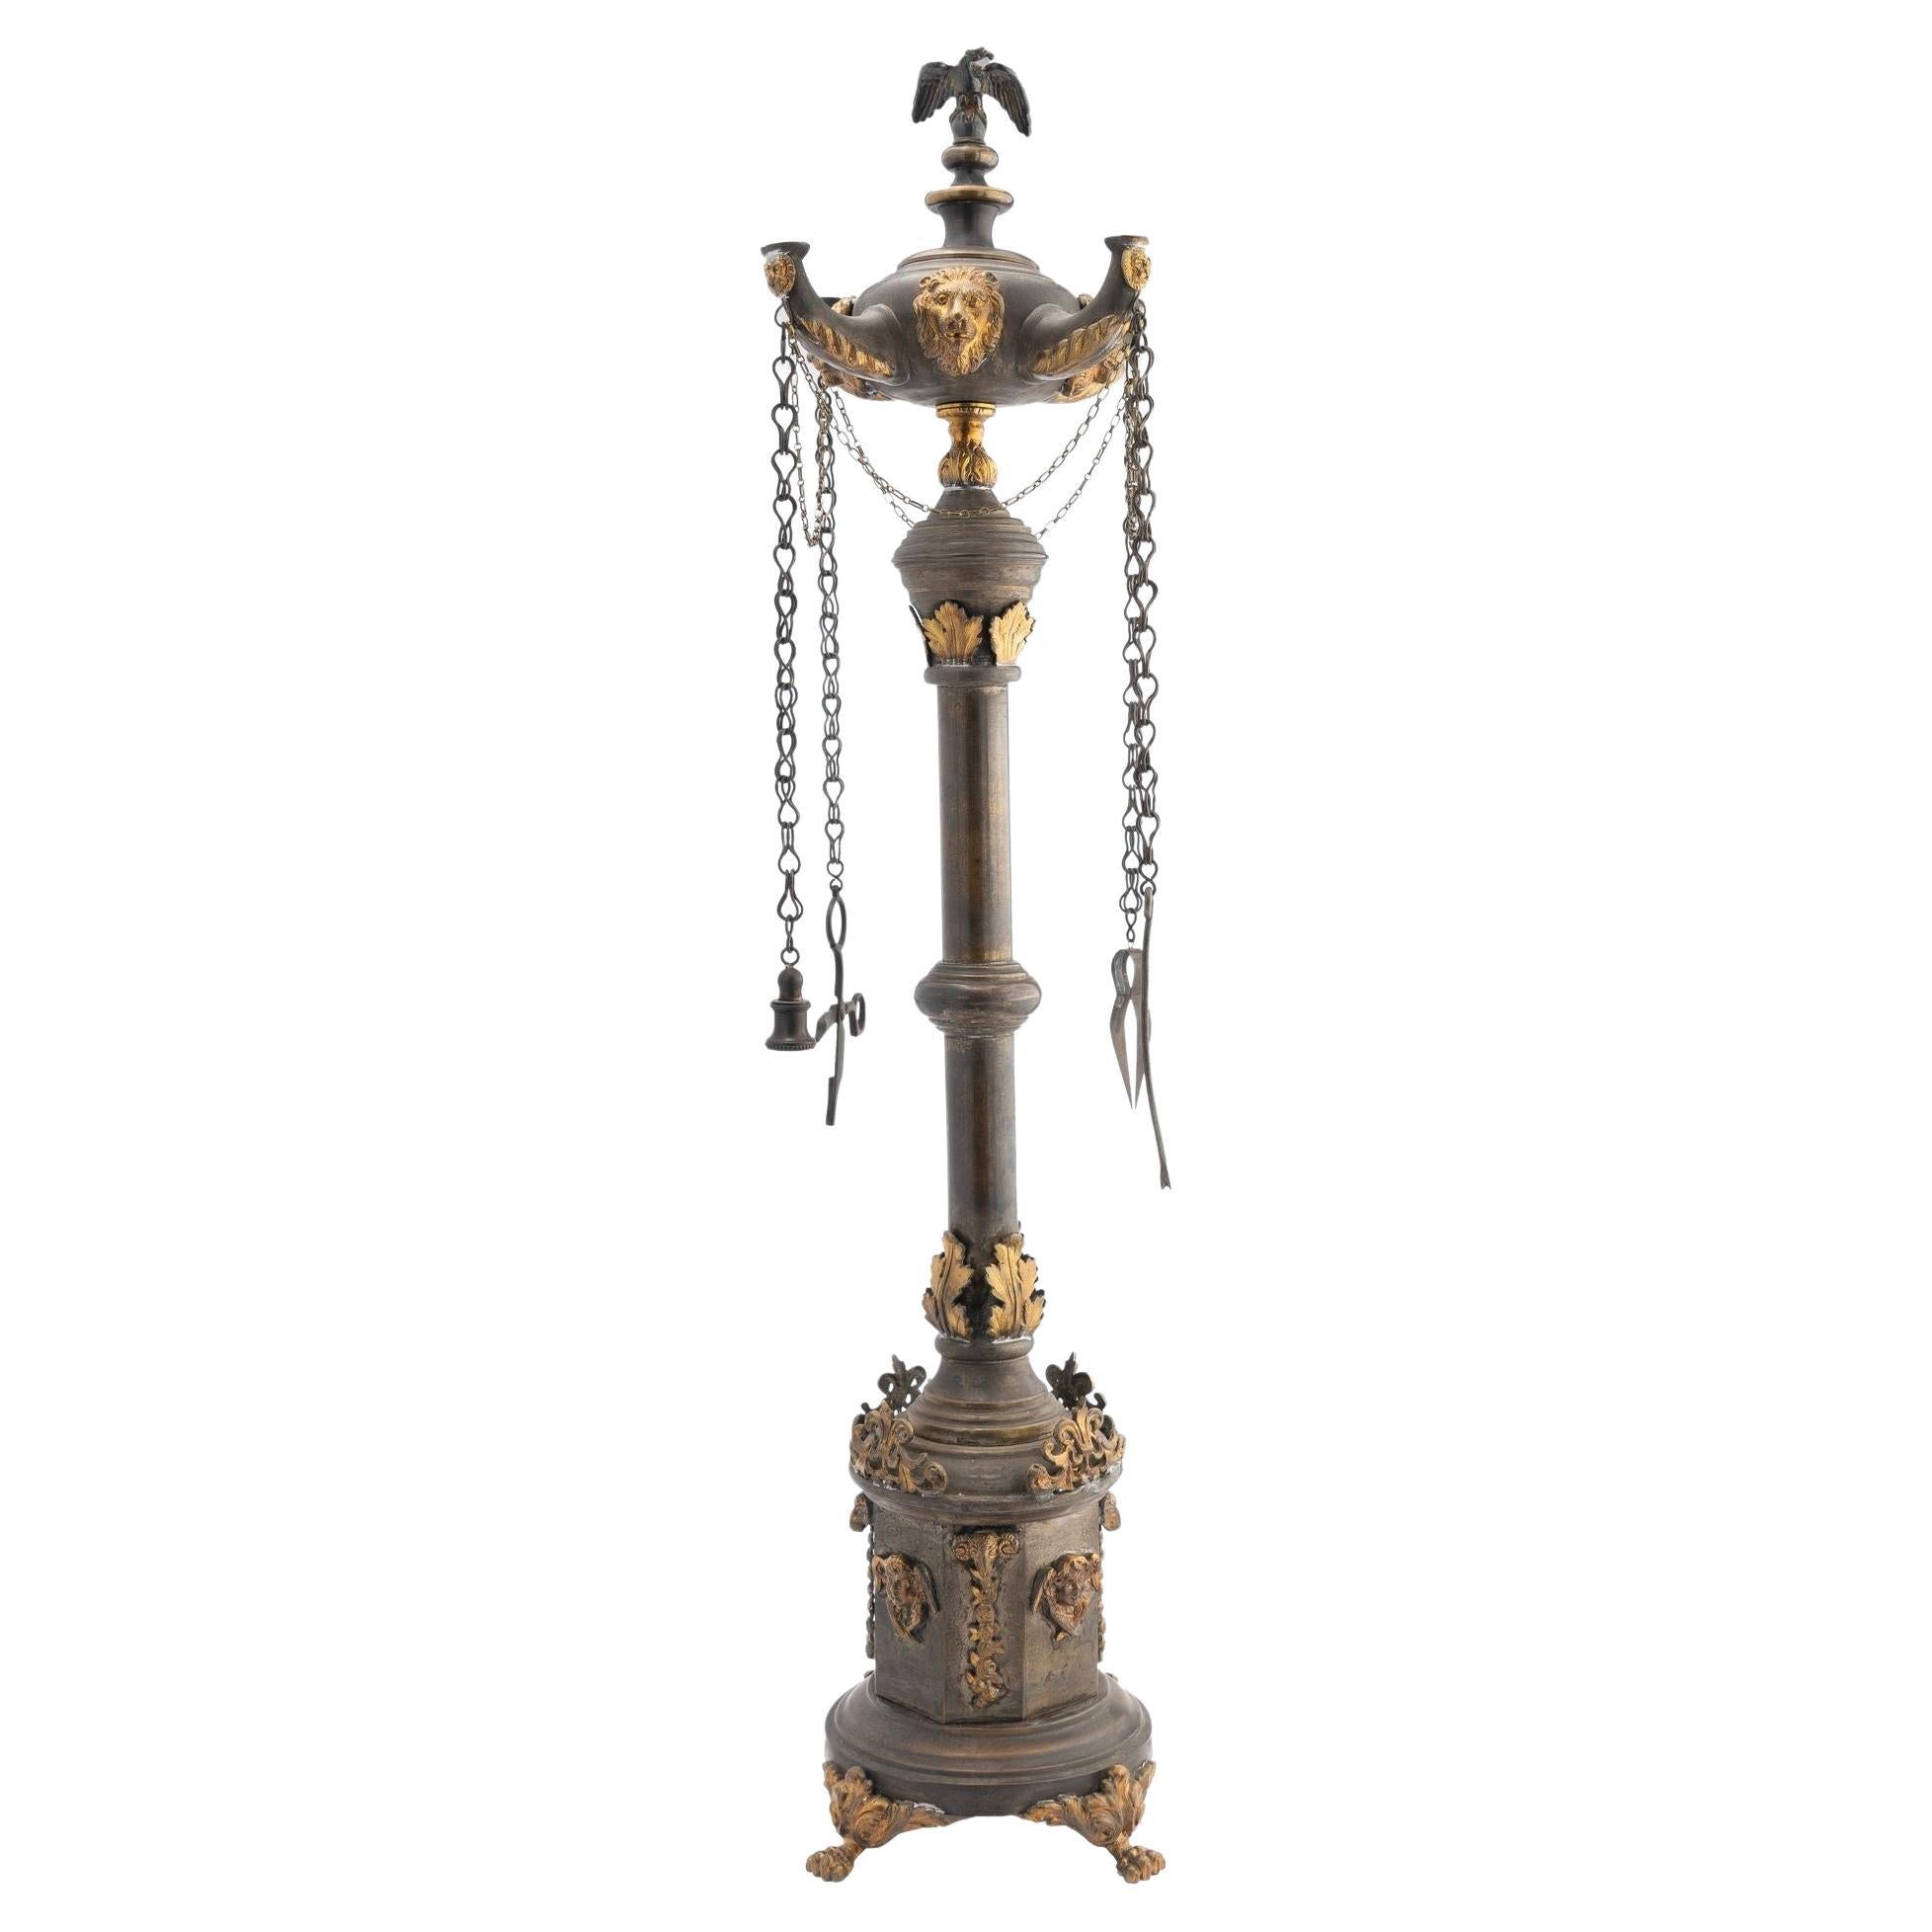 Lampe à huile italienne Lucerne avec ornements dorés contrastés '1800'